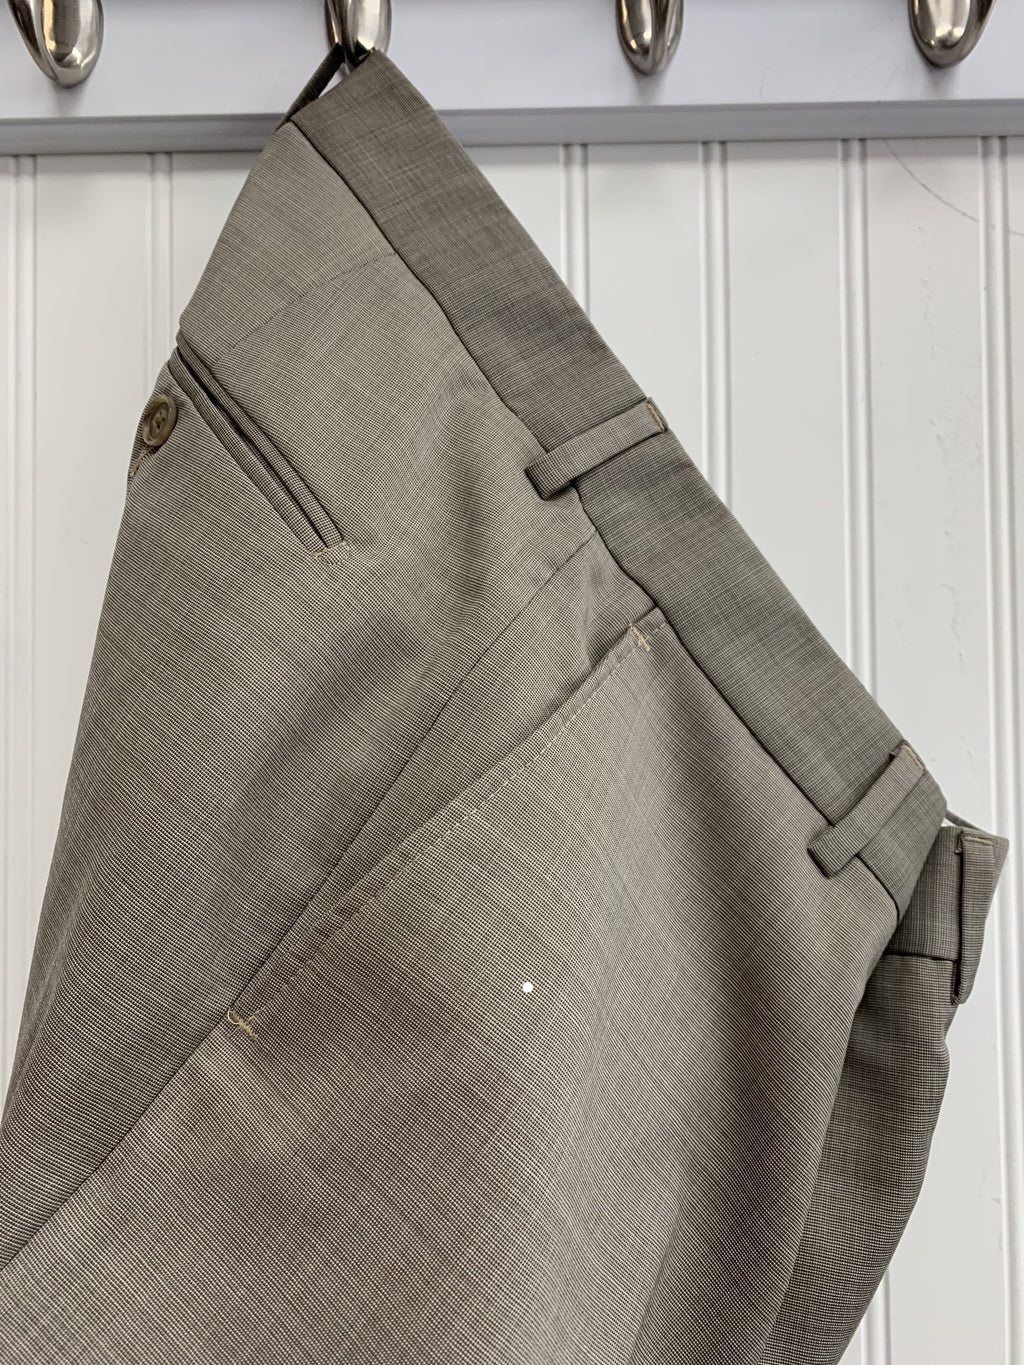 S. Cohen Prestige Wool Trousers- 94-4254 (Beige)